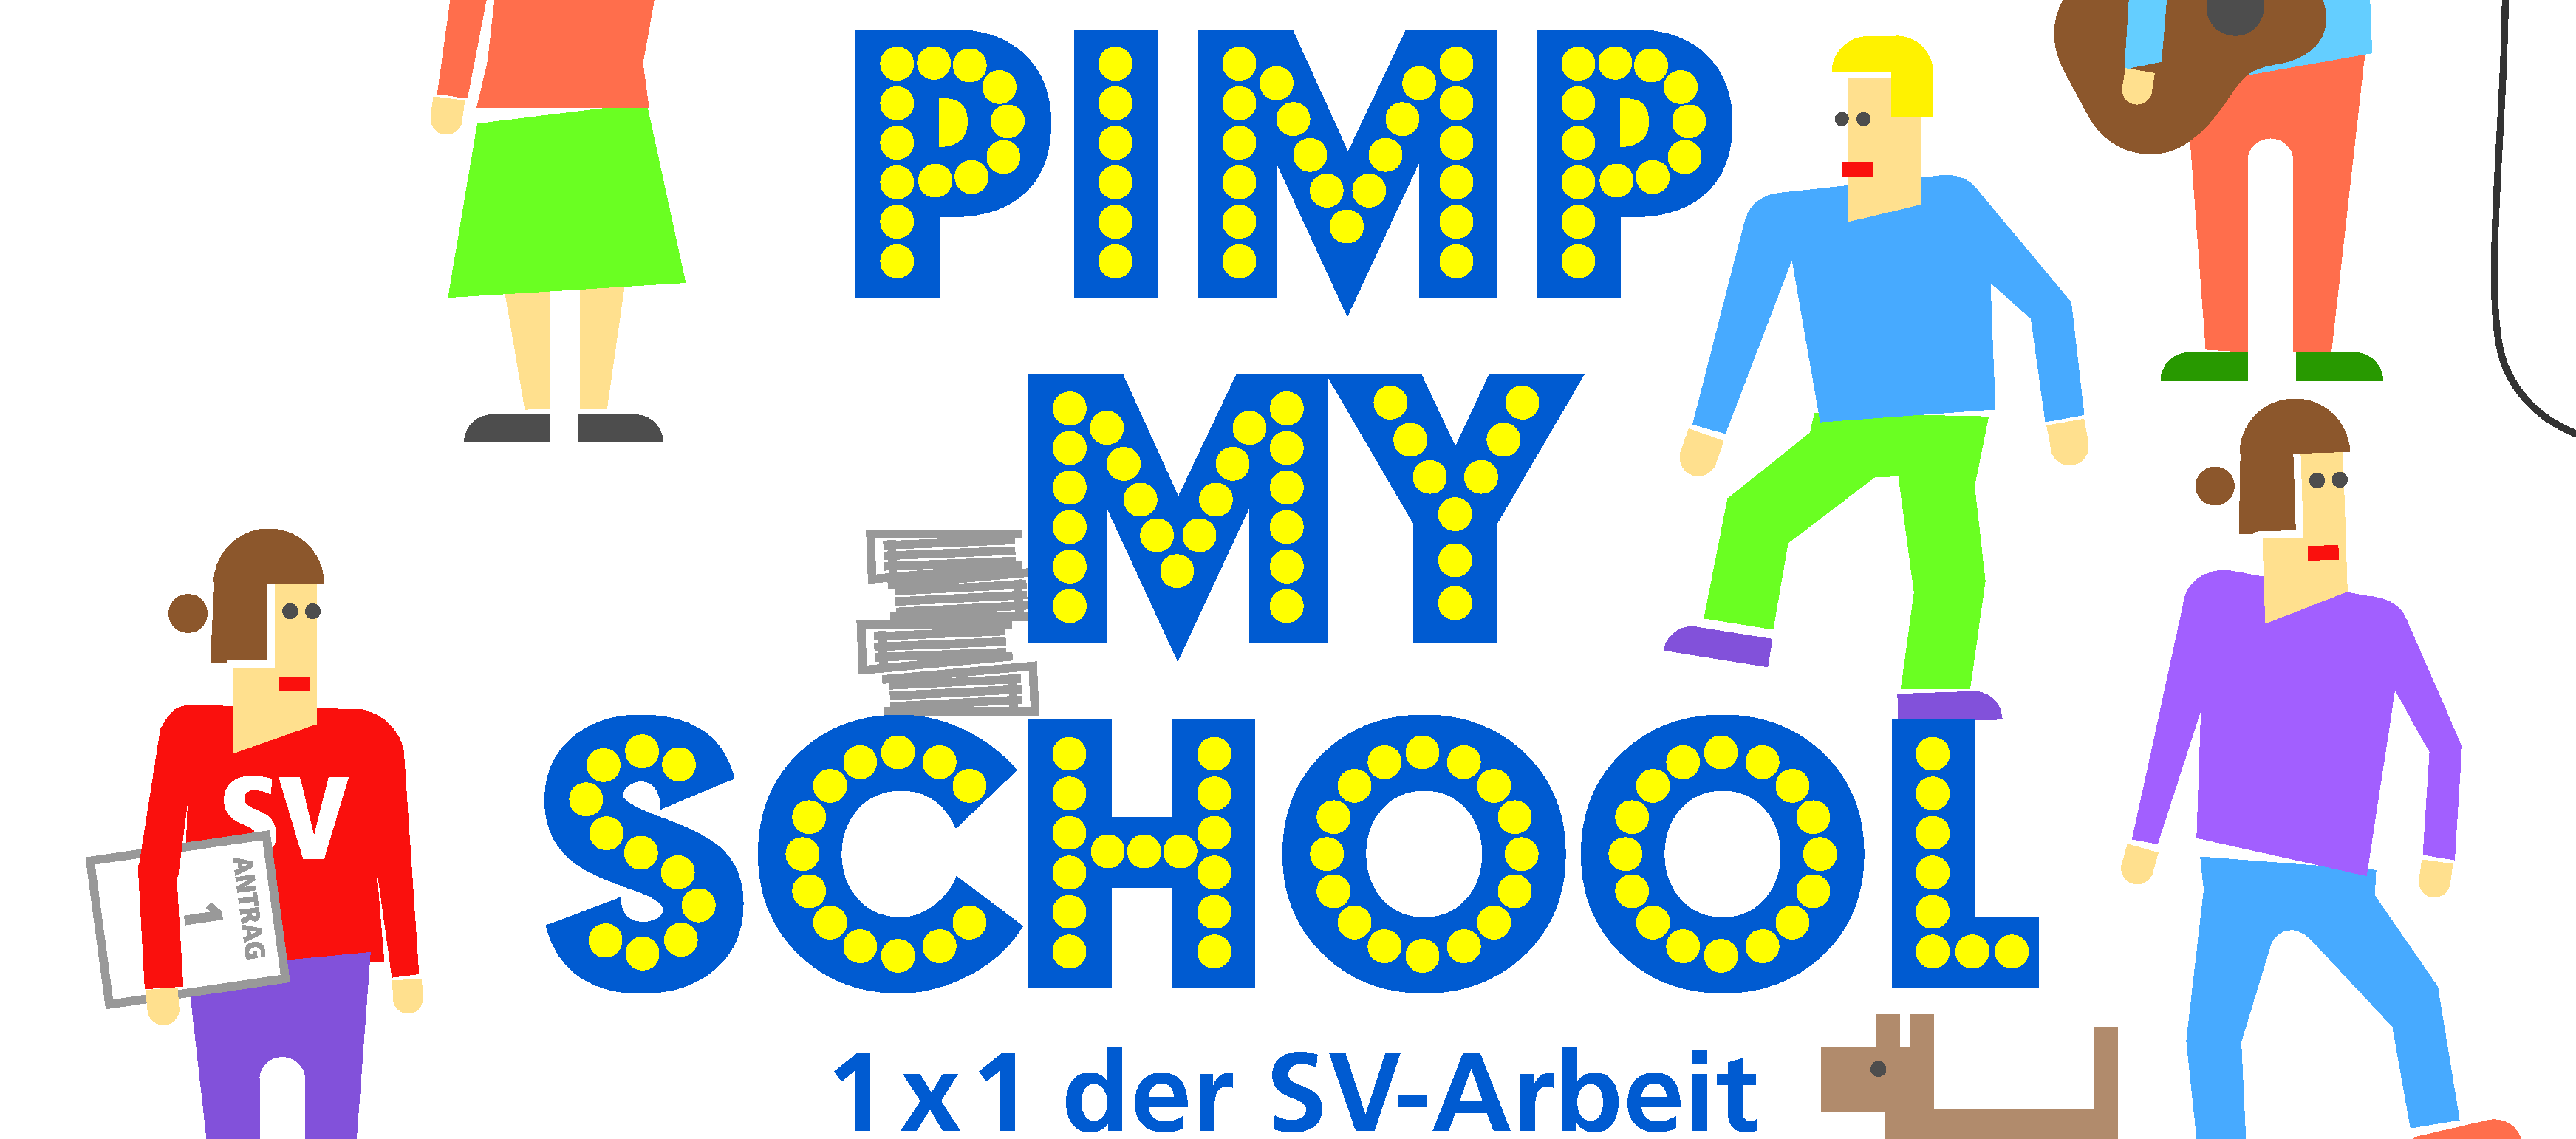 Buchtitel "Pimp my school 1x1 der SV-Arbeit". Verschiedene Comicfiguren. 